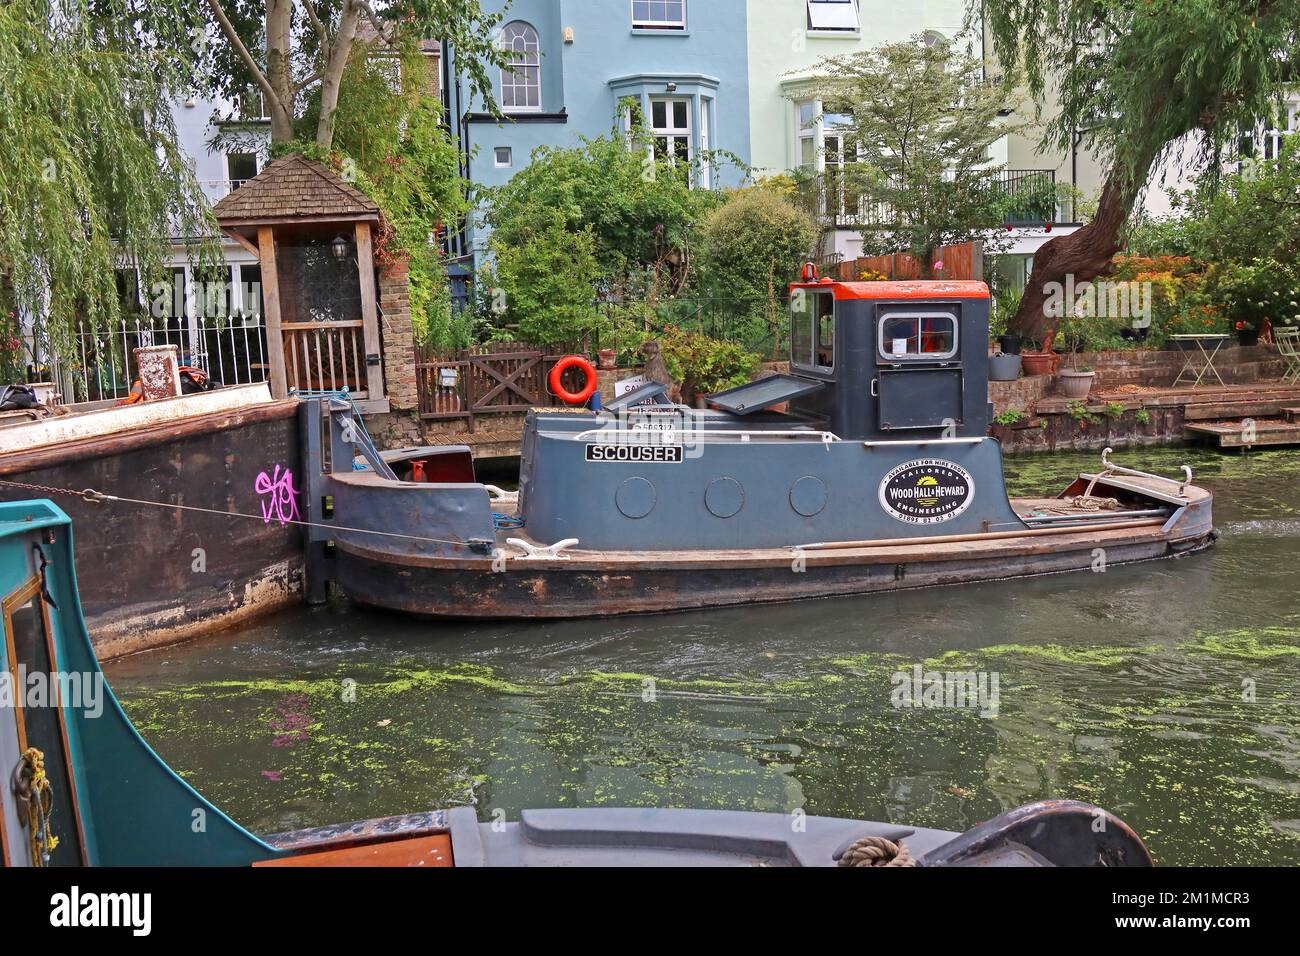 Scouser, bateau de travail de canal - Regents Canal - Wood hall & Heward Ltd, Camden, Londres, Angleterre, Royaume-Uni Banque D'Images